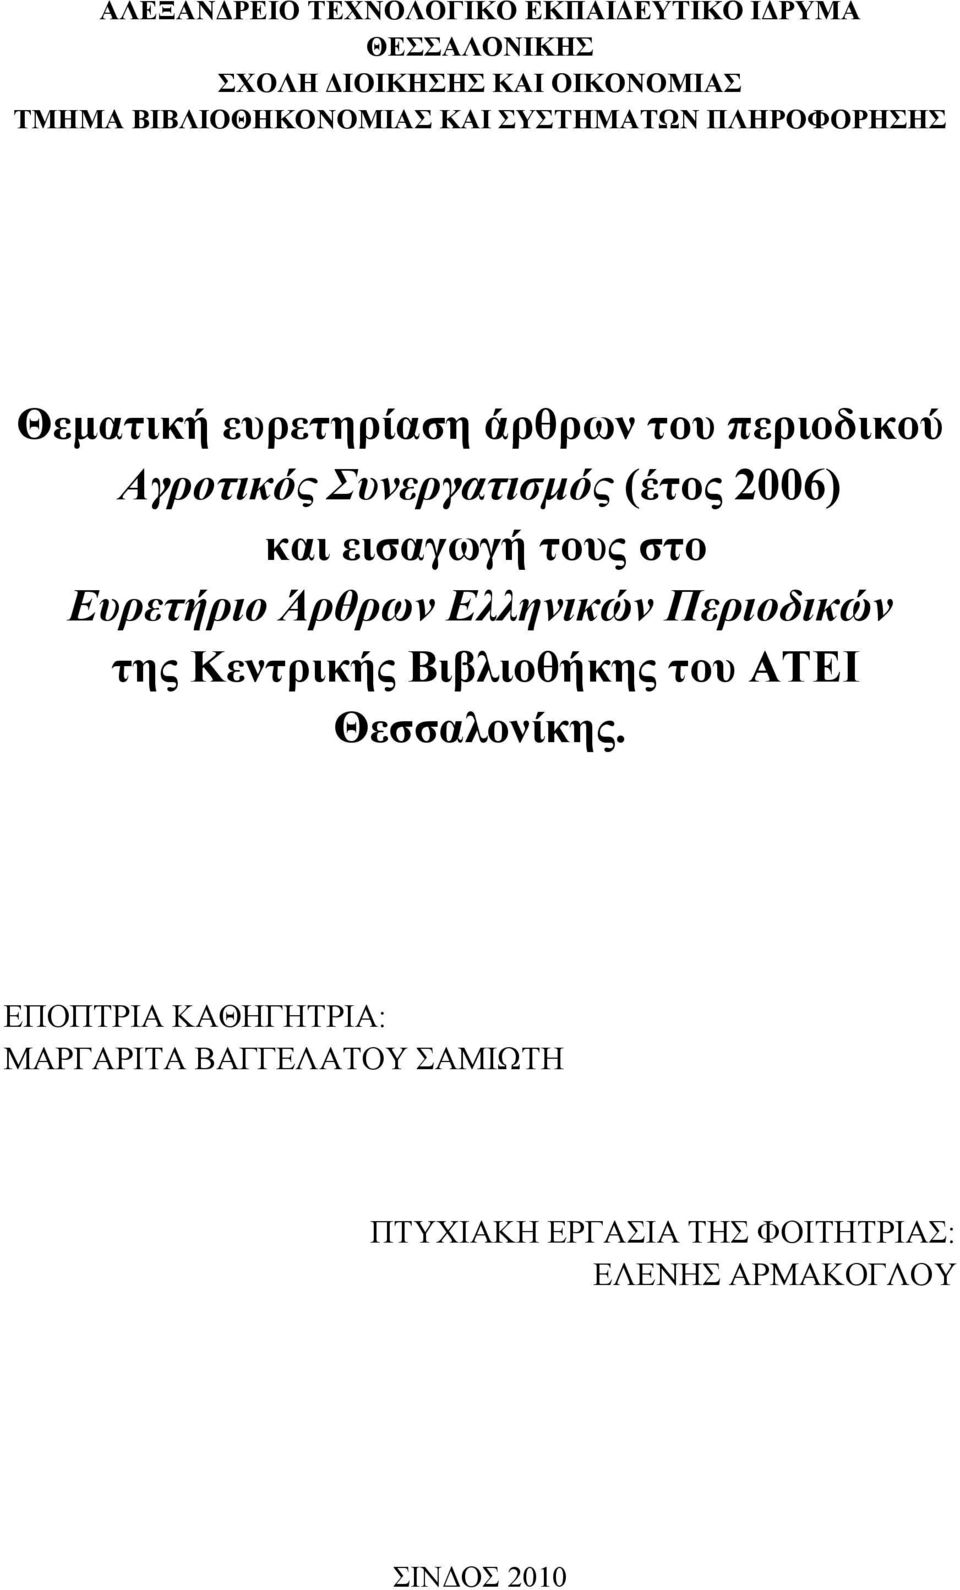 Συνεργατισμός (έτος 2006) και εισαγωγή τους στο Ευρετήριο Άρθρων Ελληνικών Περιοδικών της Κεντρικής